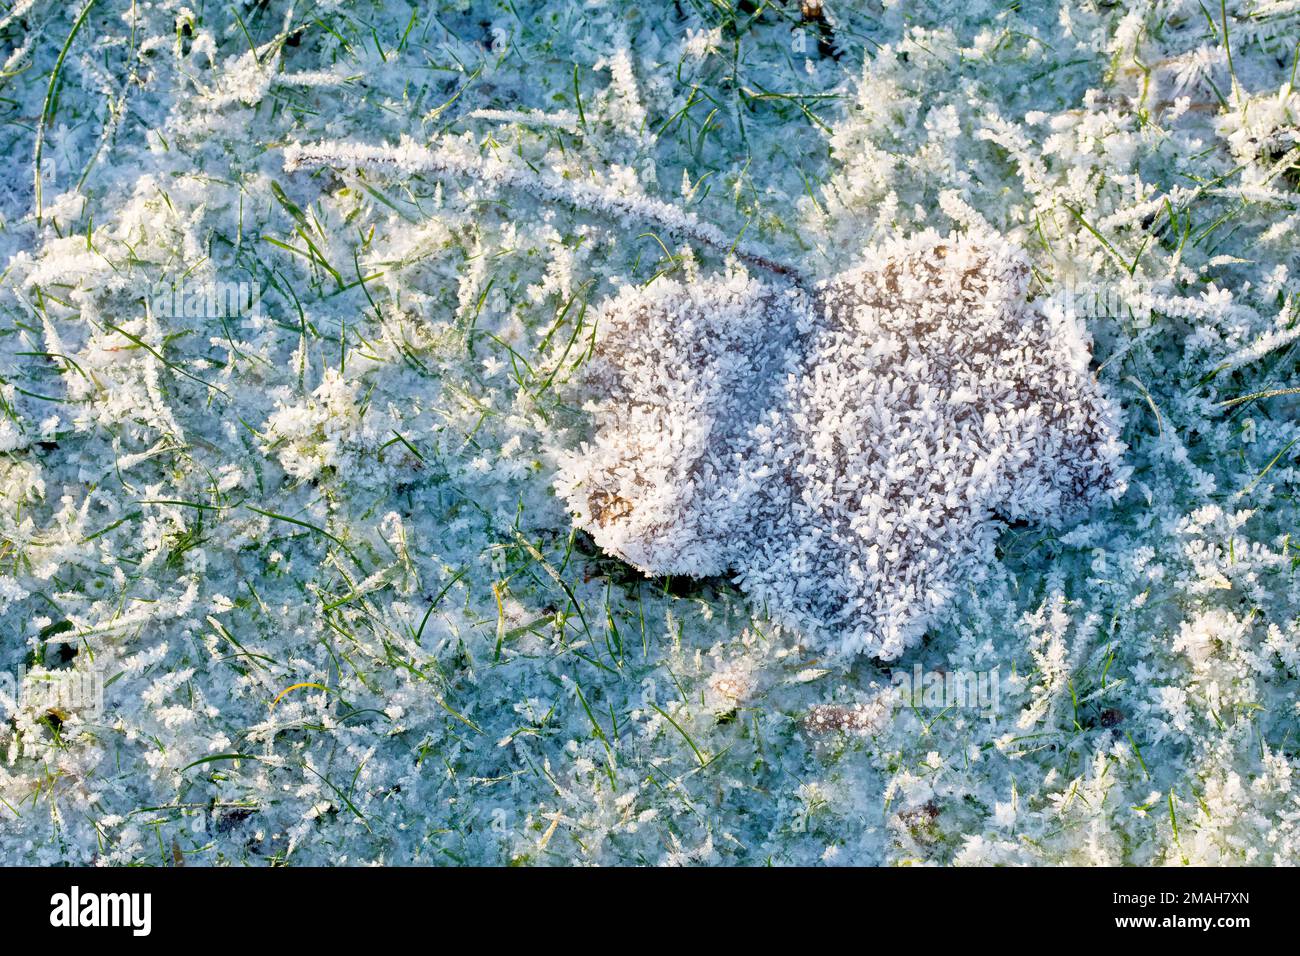 Primo piano di una singola foglia adagiata sull'erba ricoperta di brina dopo un paio di notti invernali davvero fredde. Foto Stock